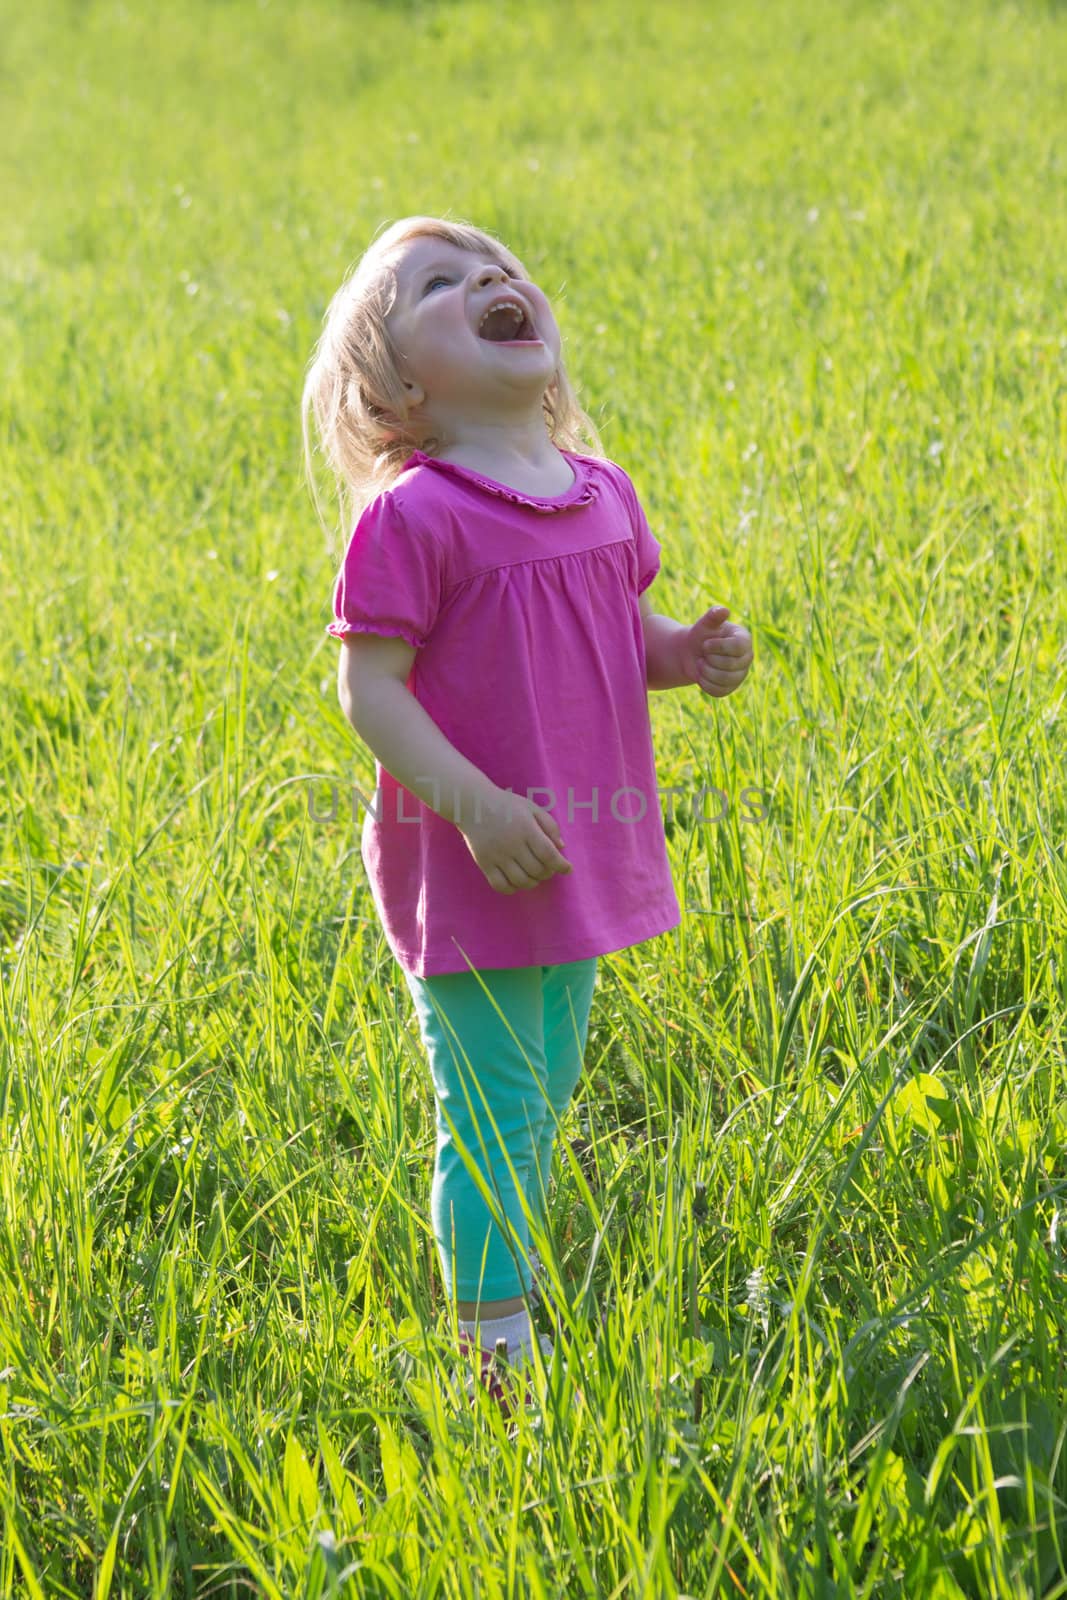 Joyful baby girl looking up among grass